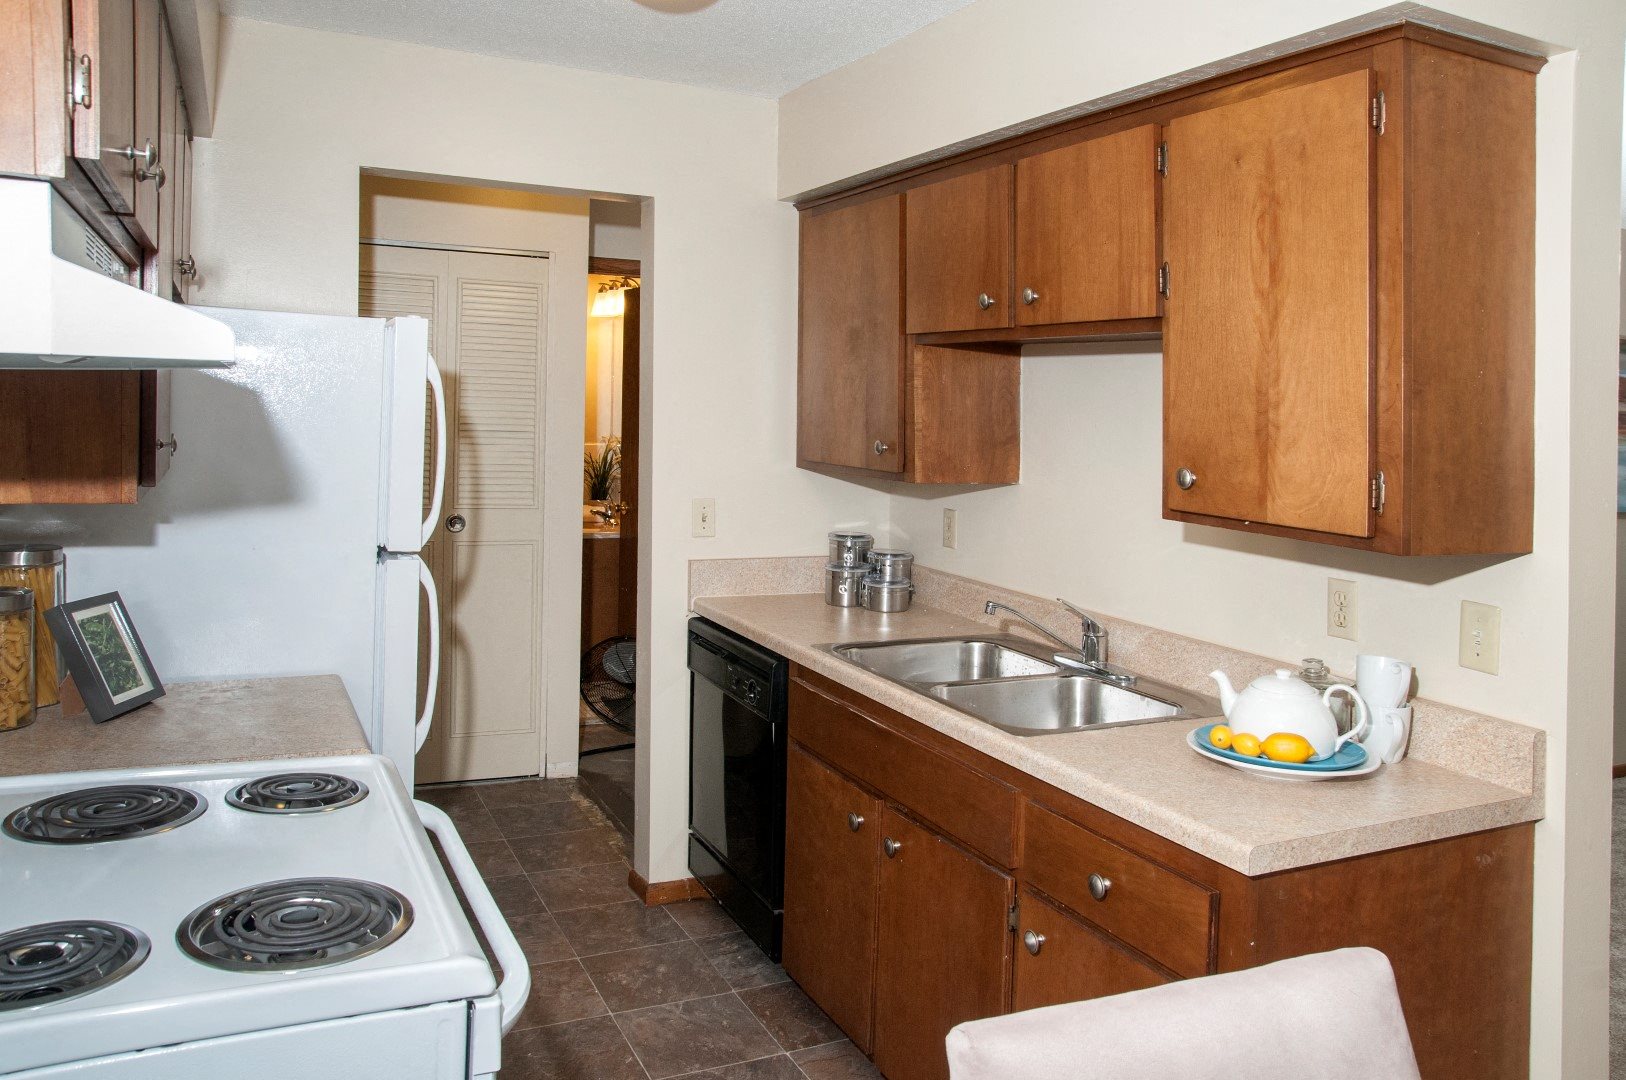 2416 Blaisdell apartments uptown galley kitchen